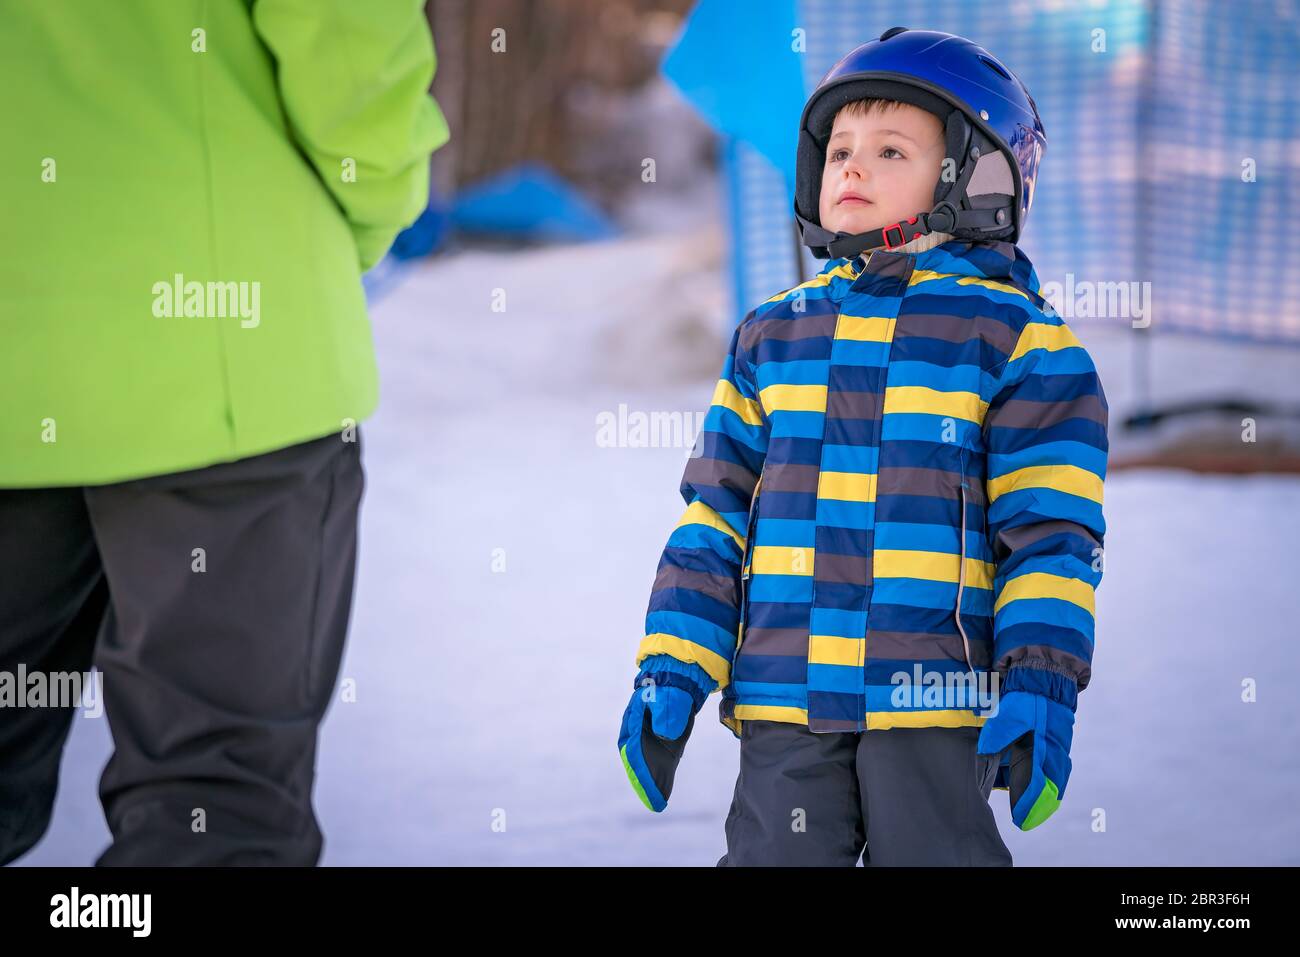 Cute little Woman adepte de ski à la recherche et à l'écoute de son moniteur de ski sur une pente en hiver Banque D'Images